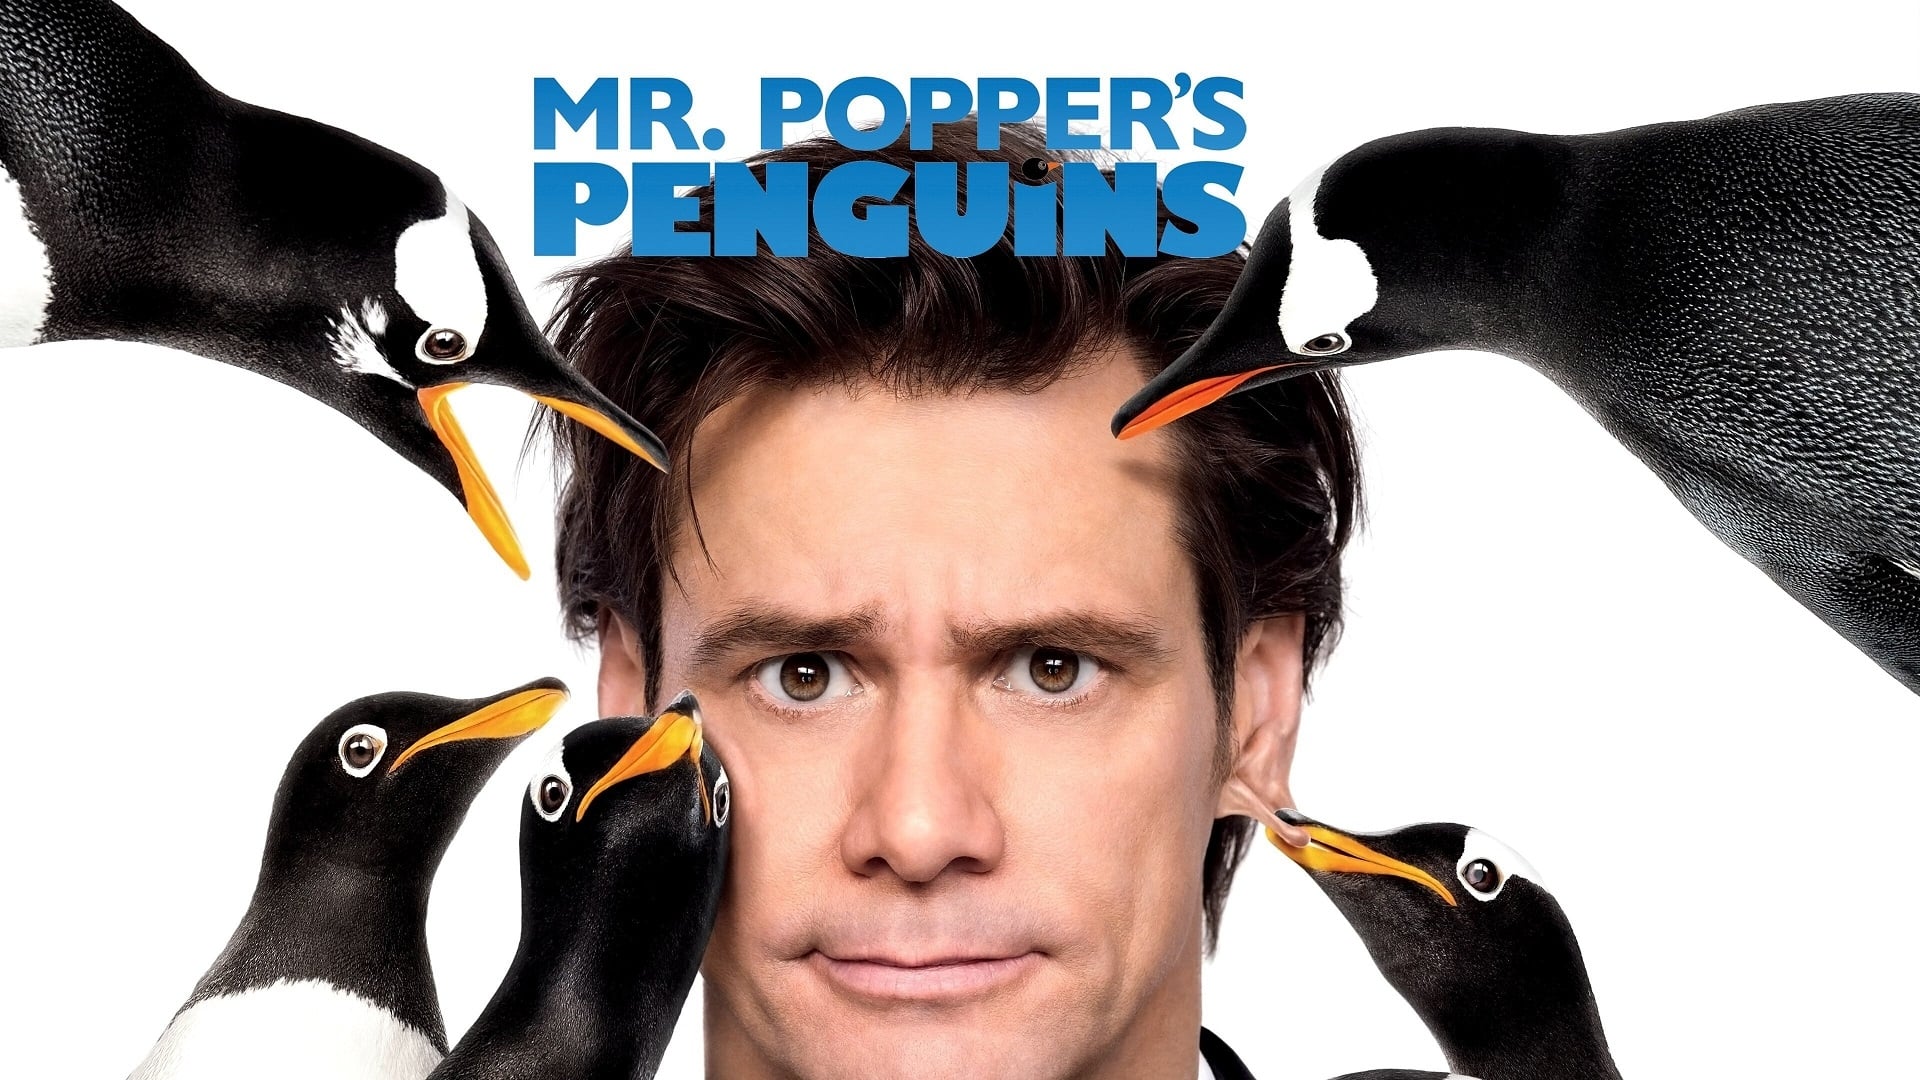 Mr. Popper's Penguins (2011)